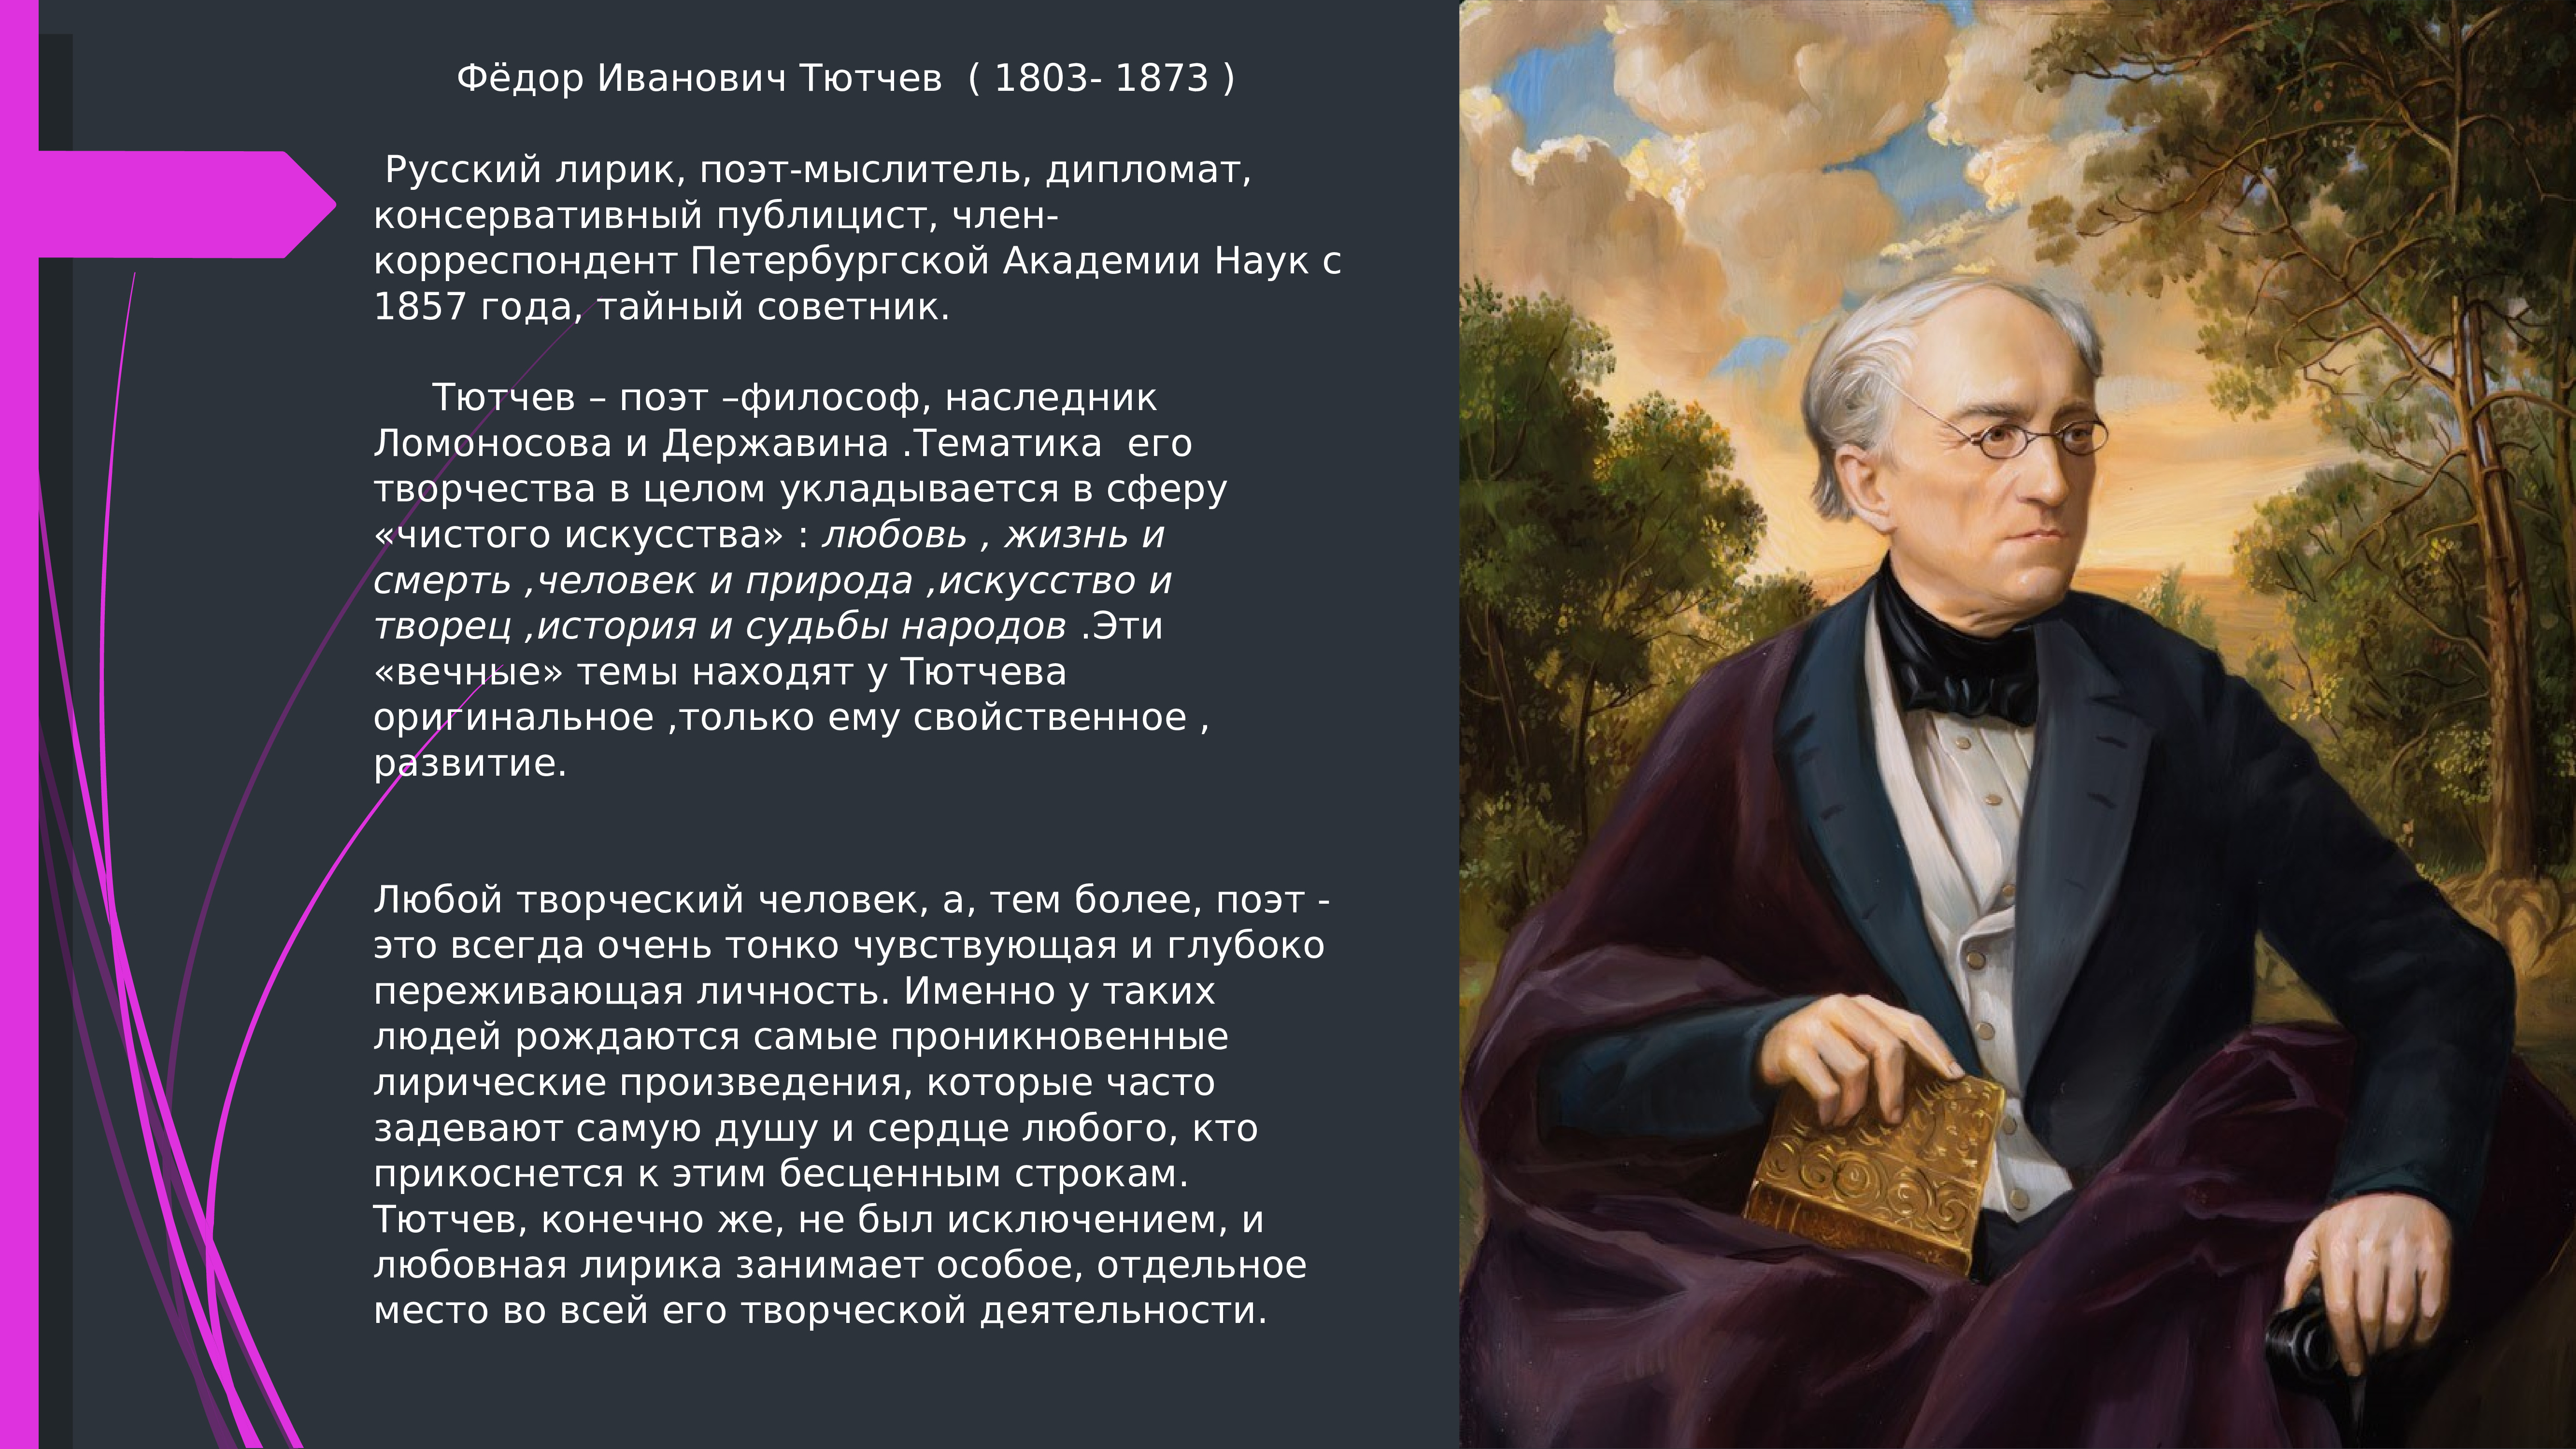 Федор Тютчев (1873) русский поэт, дипломат, консервативный публицист